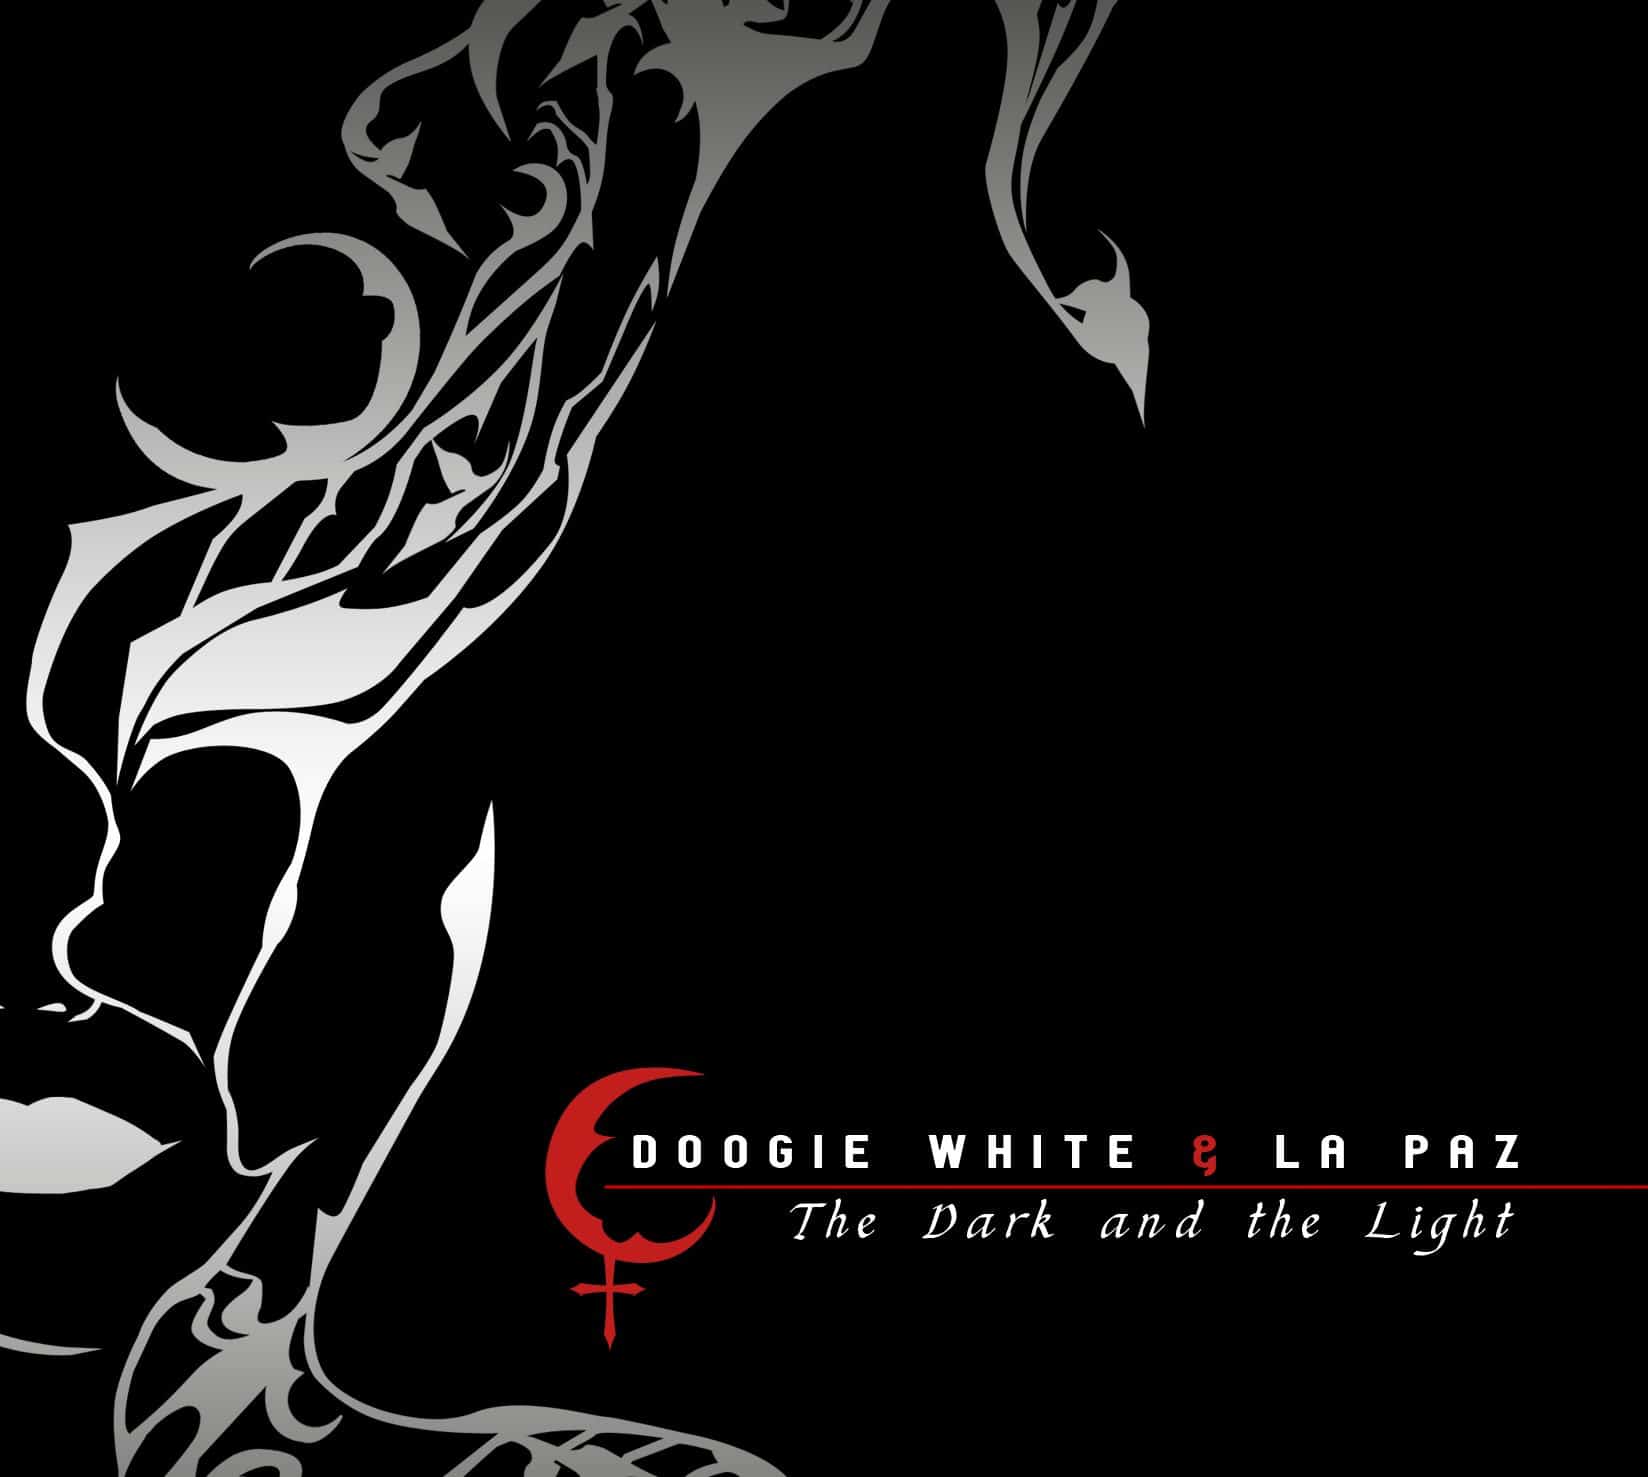 Doogie White & La Paz - zobacz nowy teledysk